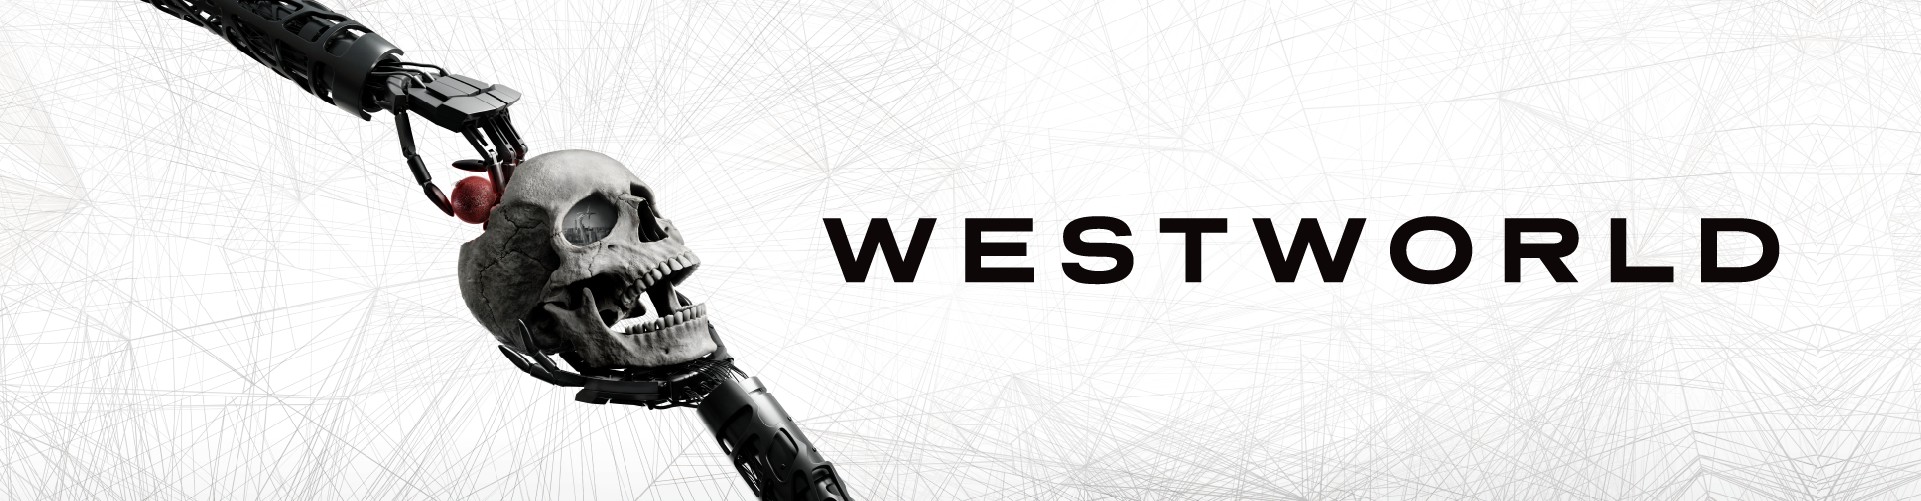 westworld-1920x500